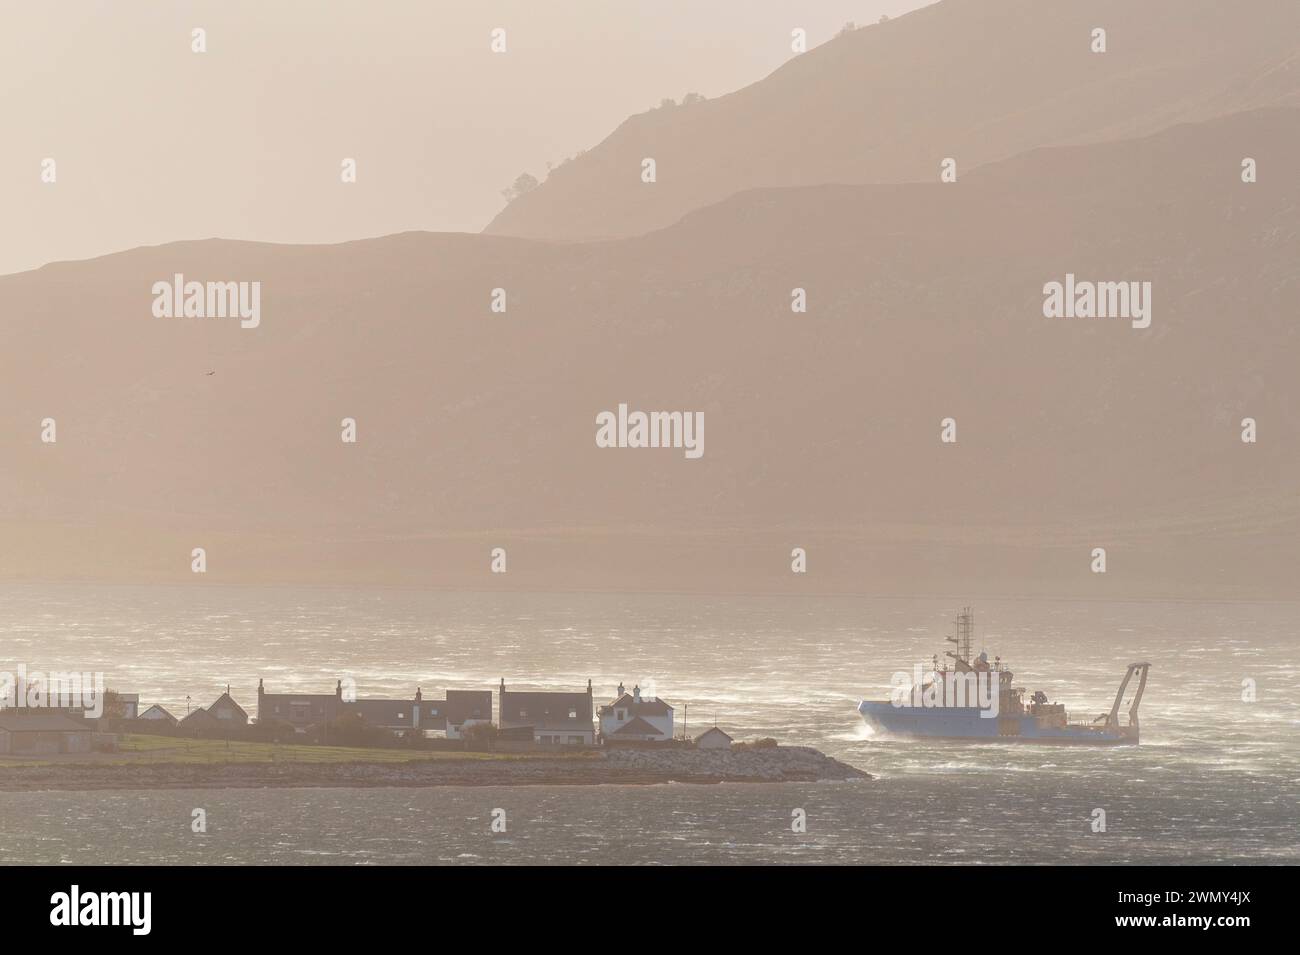 Royaume-Uni, Écosse, Highlands, North Coast 500 route, Ullapool, bateau retournant au port pendant une tempête Banque D'Images